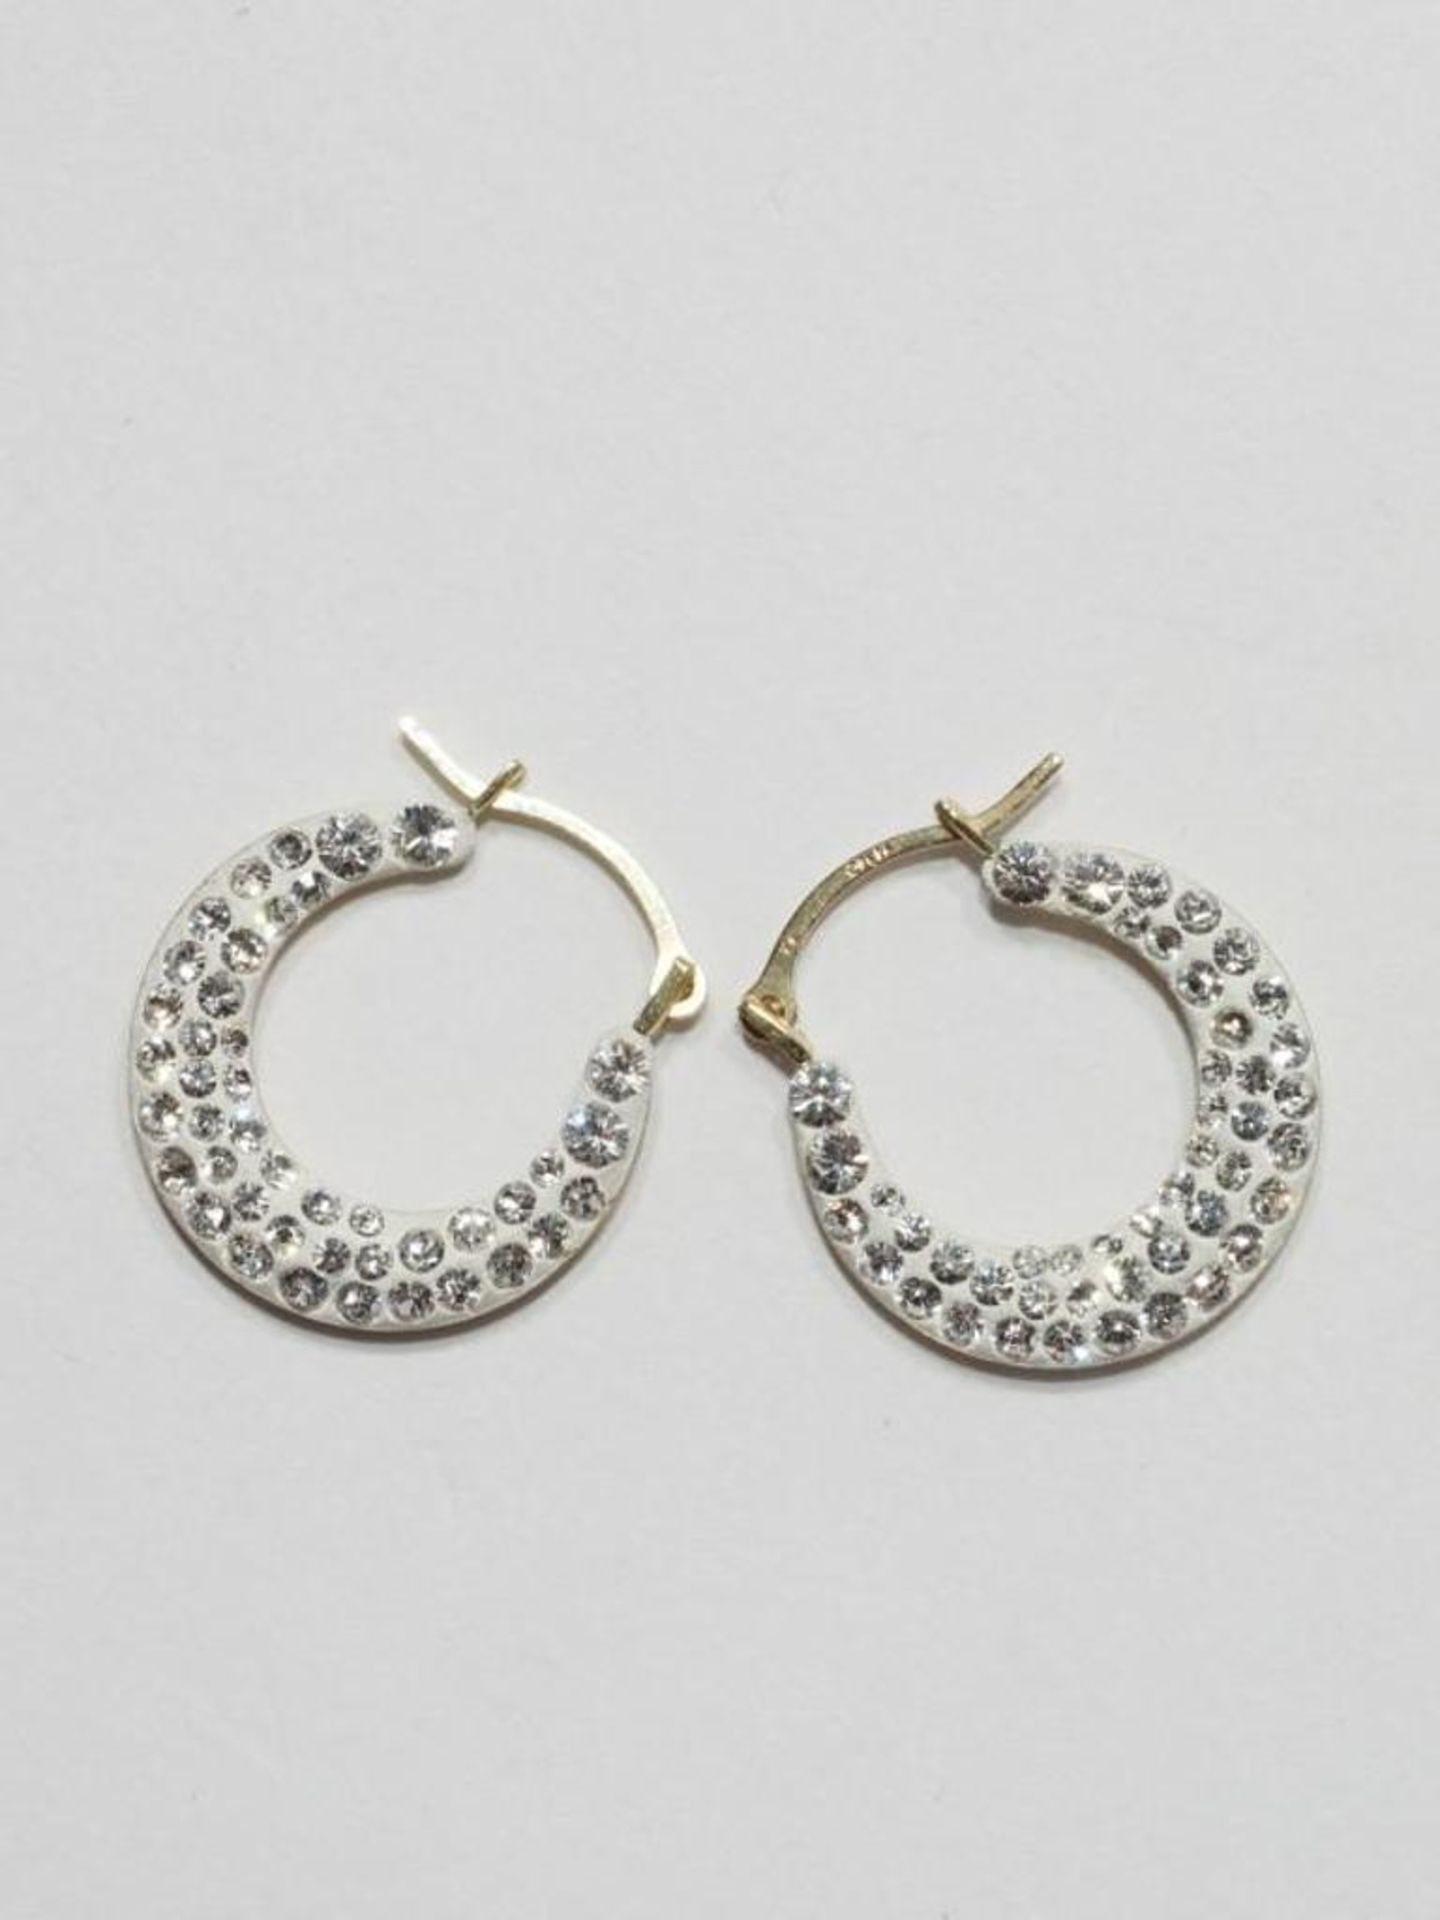 10K Gold Cubic Zirconia Earrings, Retail $250